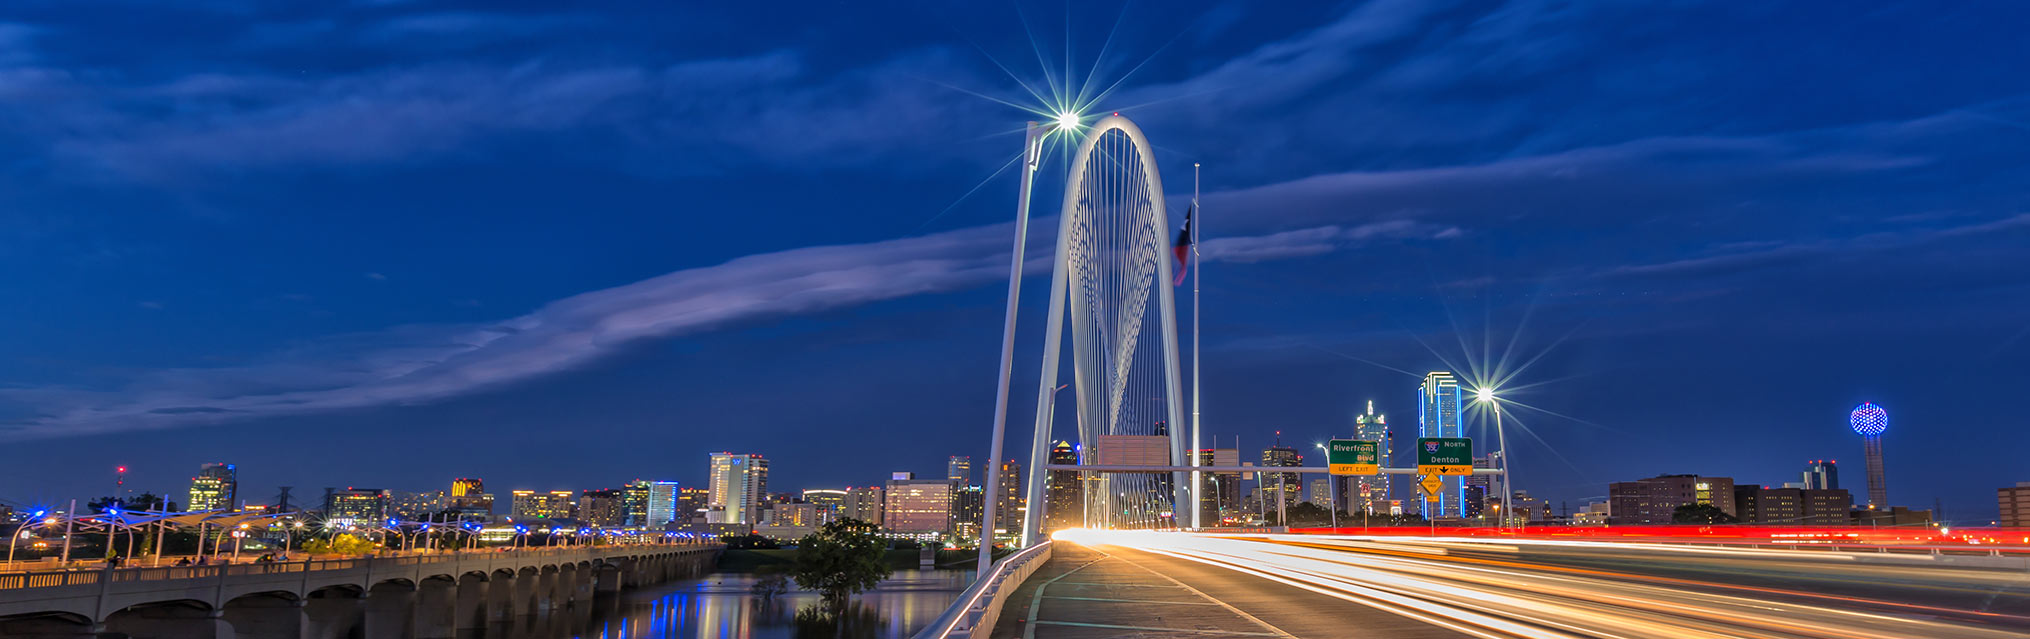 Si buscas una compañía de luz en Dallas, estamos para servirte
